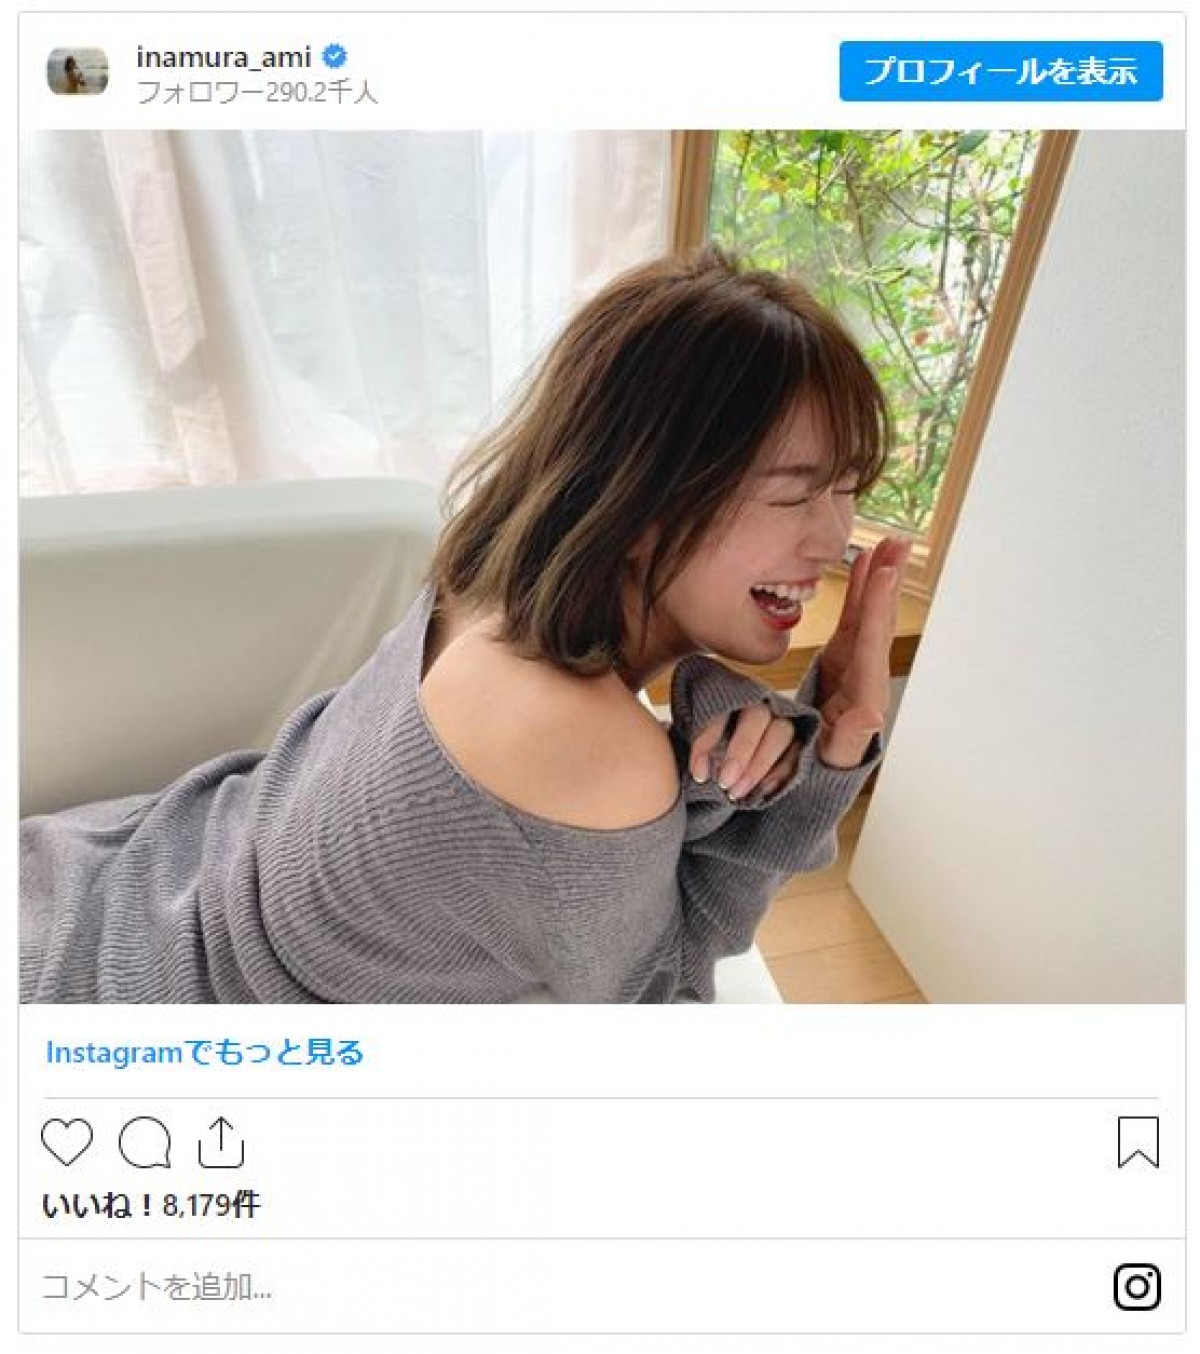 稲村亜美、大笑いショットにファン癒やされる「笑顔が素敵」「最高」